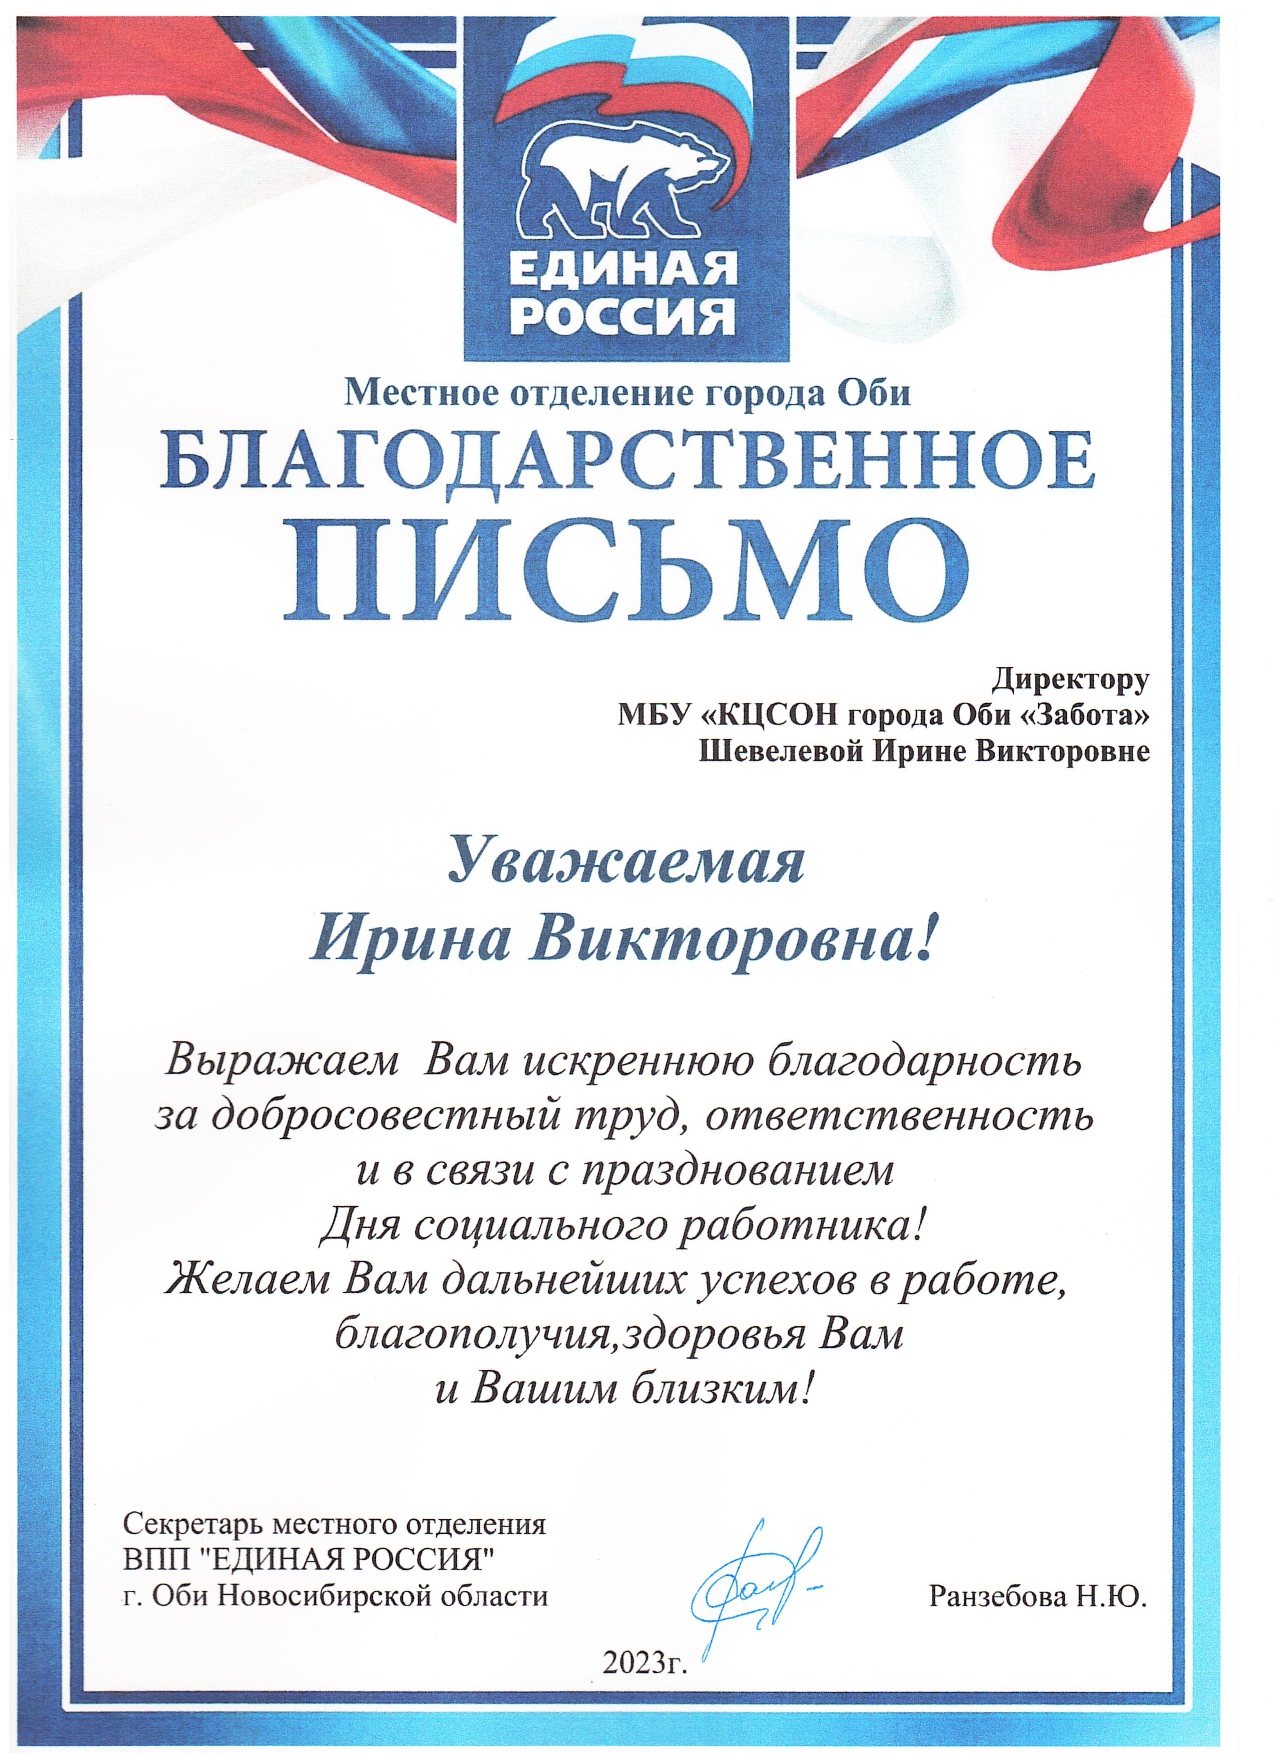 Благодарственное письмо от Единой России